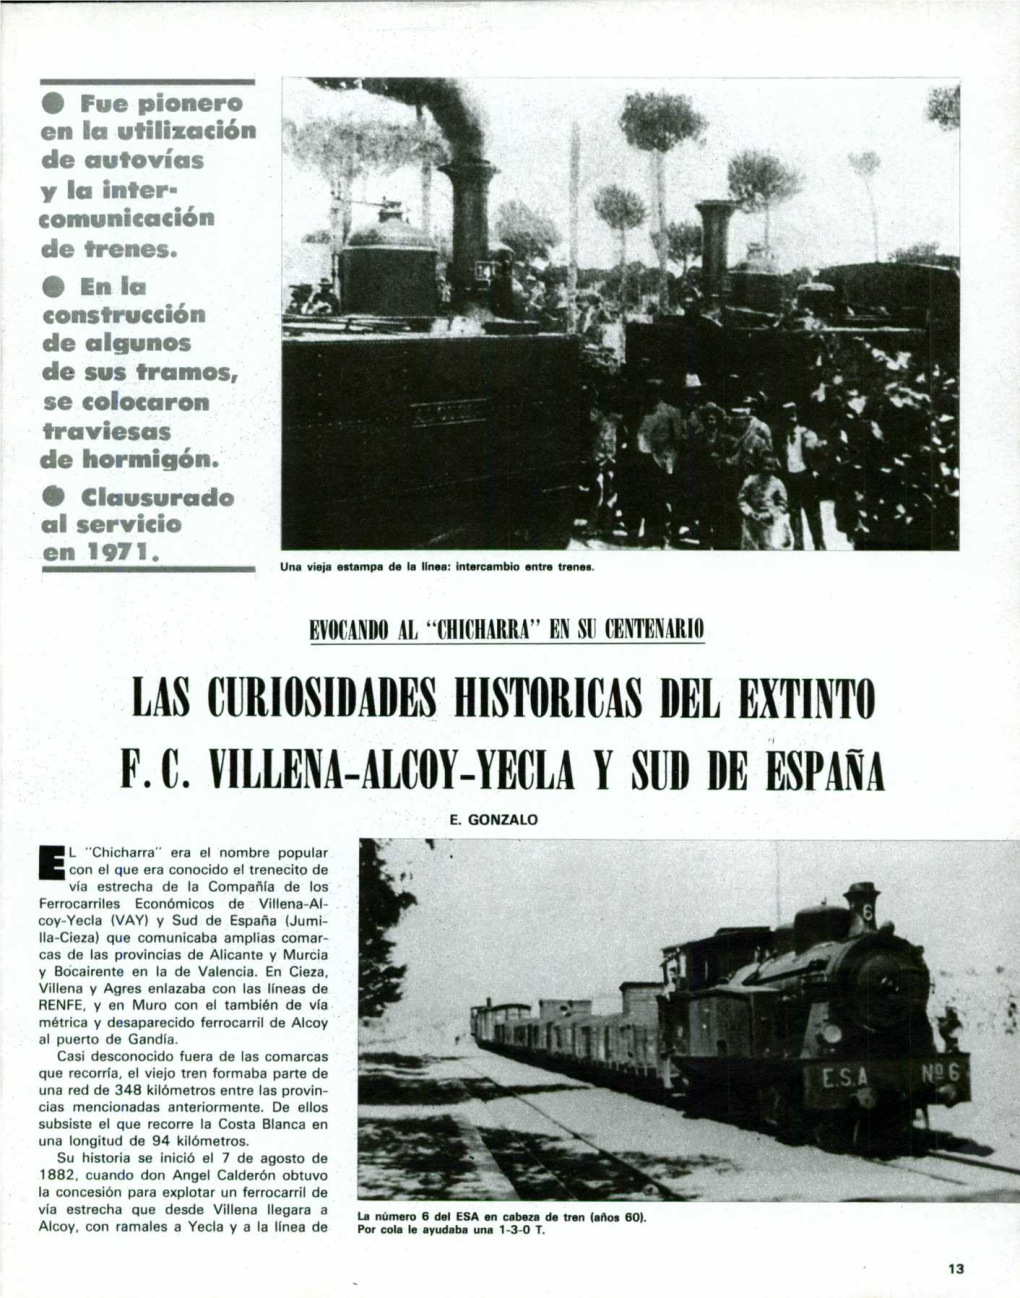 Las Curiosidades Nistoricas Del Extinto F.C. Villena-Alcoy-Yecla Y Sud De España